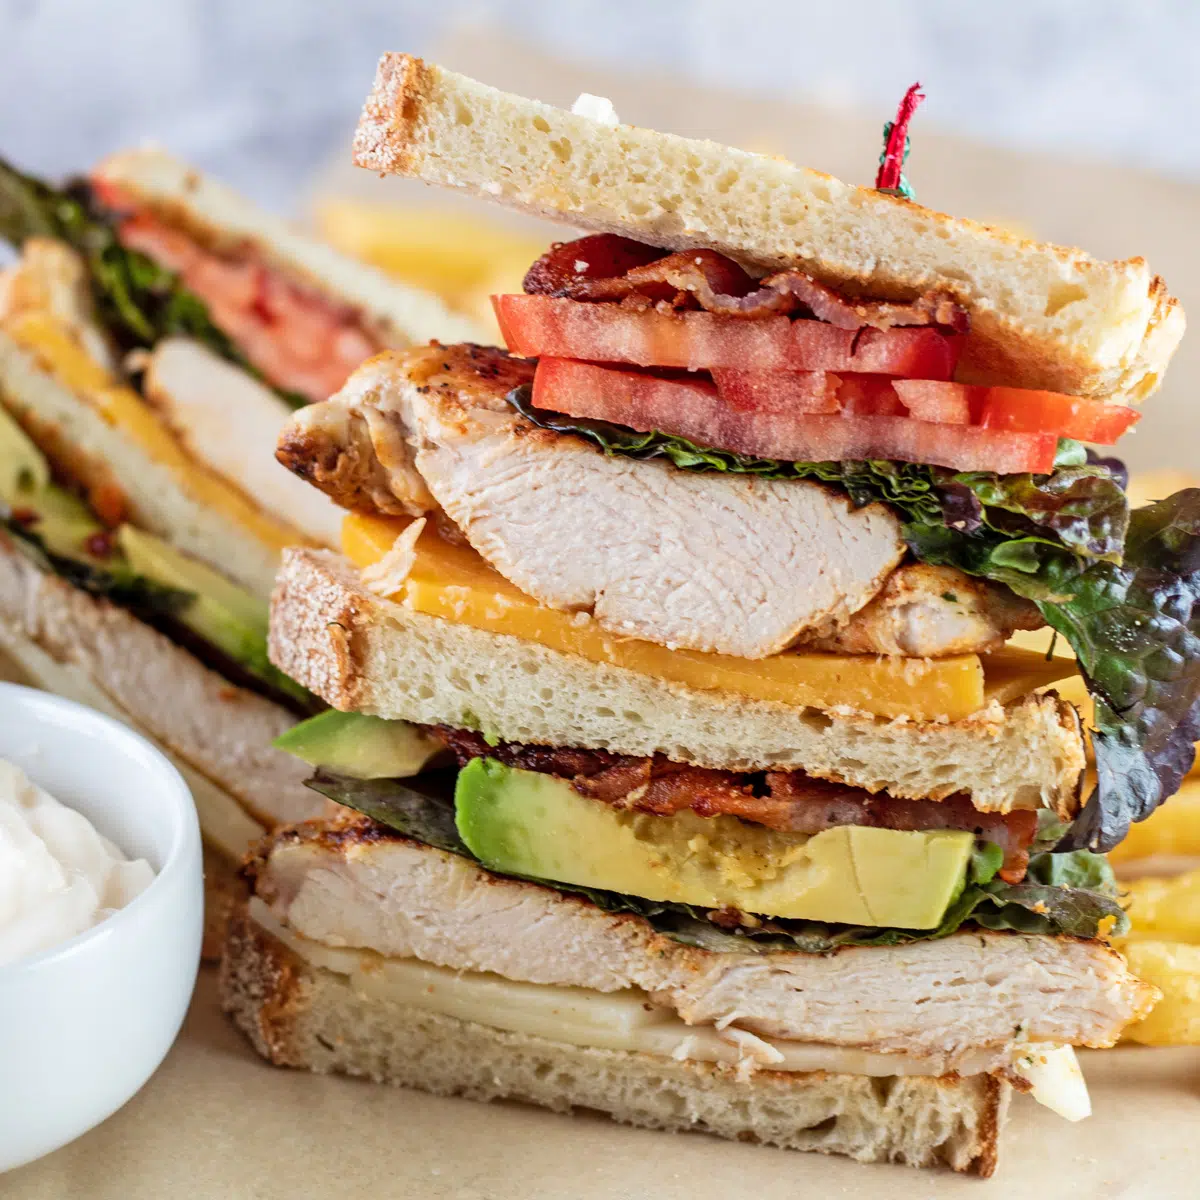 Club sandwich au poulet avec frites sur un parchemin.